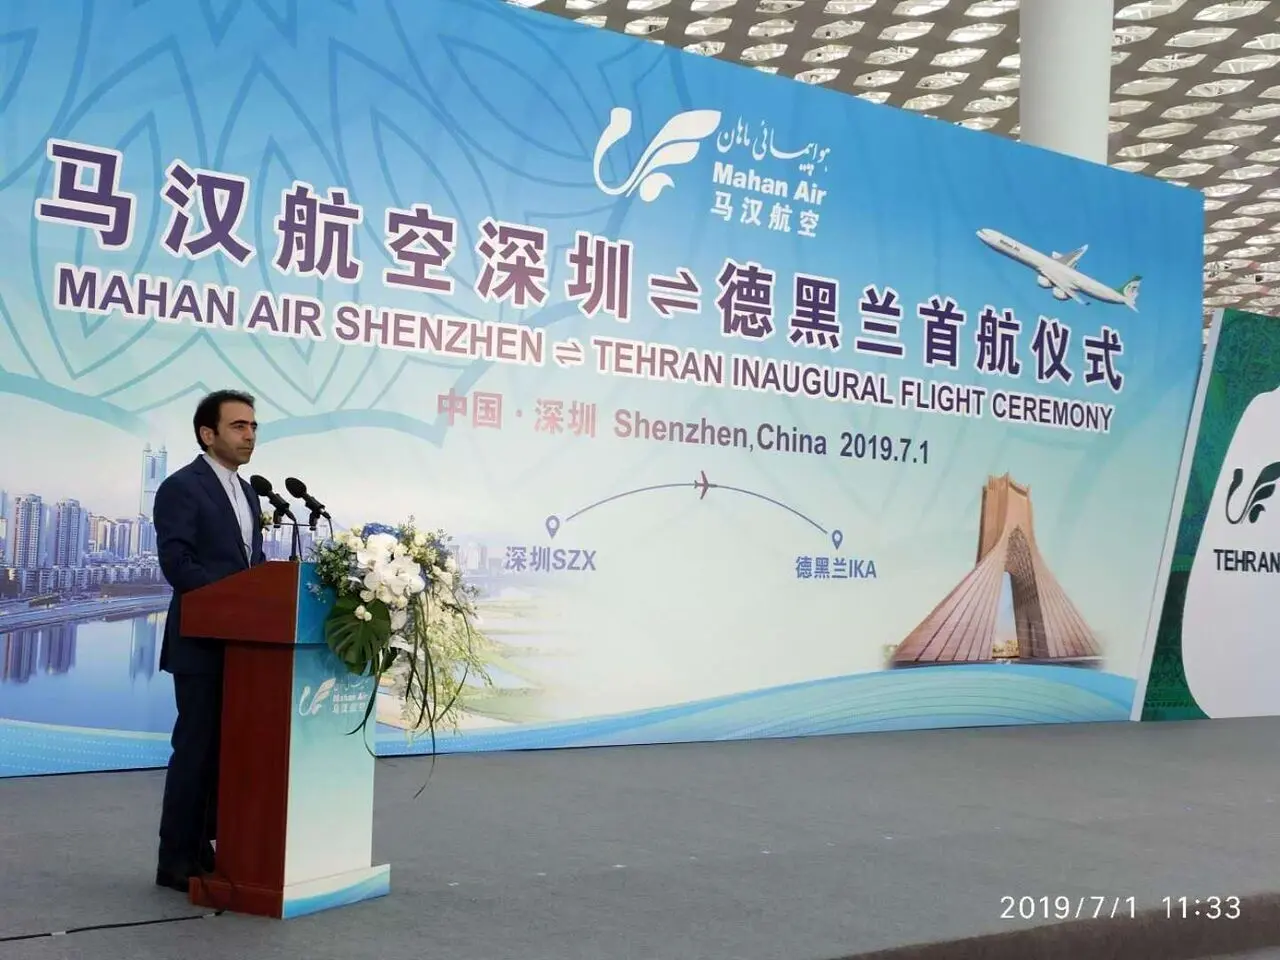 Tehran-Shenzhen flights launched